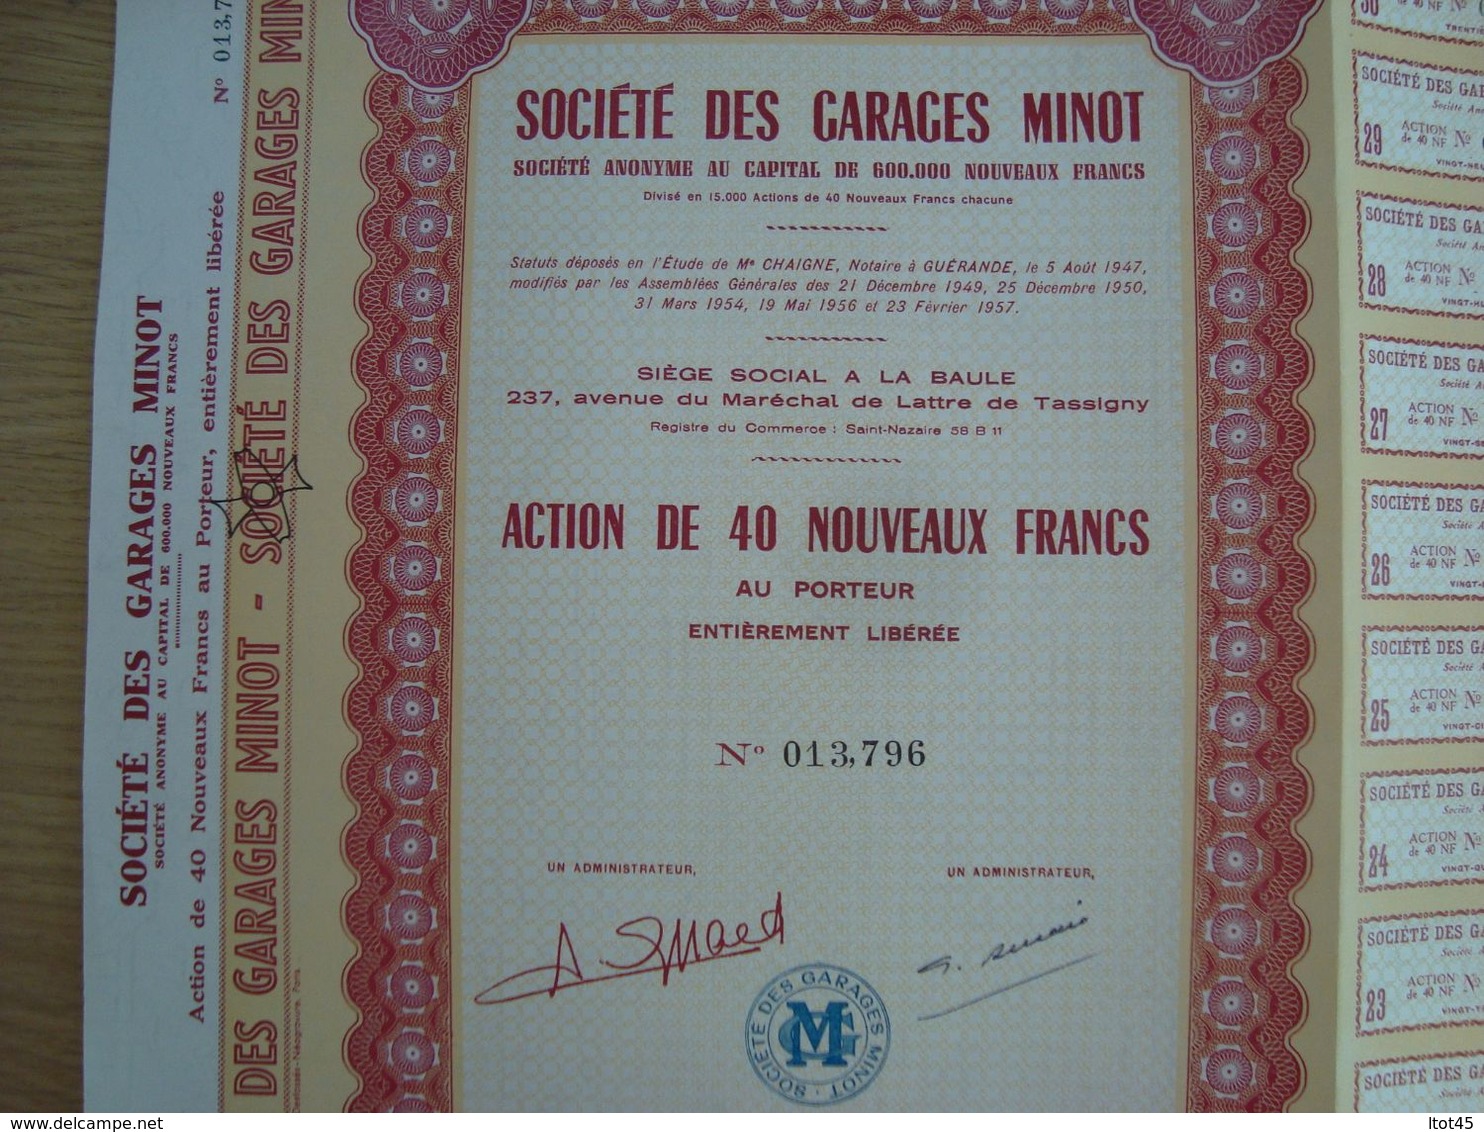 ACTION DE 40 NOUVEAUX FRANCS SOCIETE DES GARAGES MINOT 1960 - Automobil